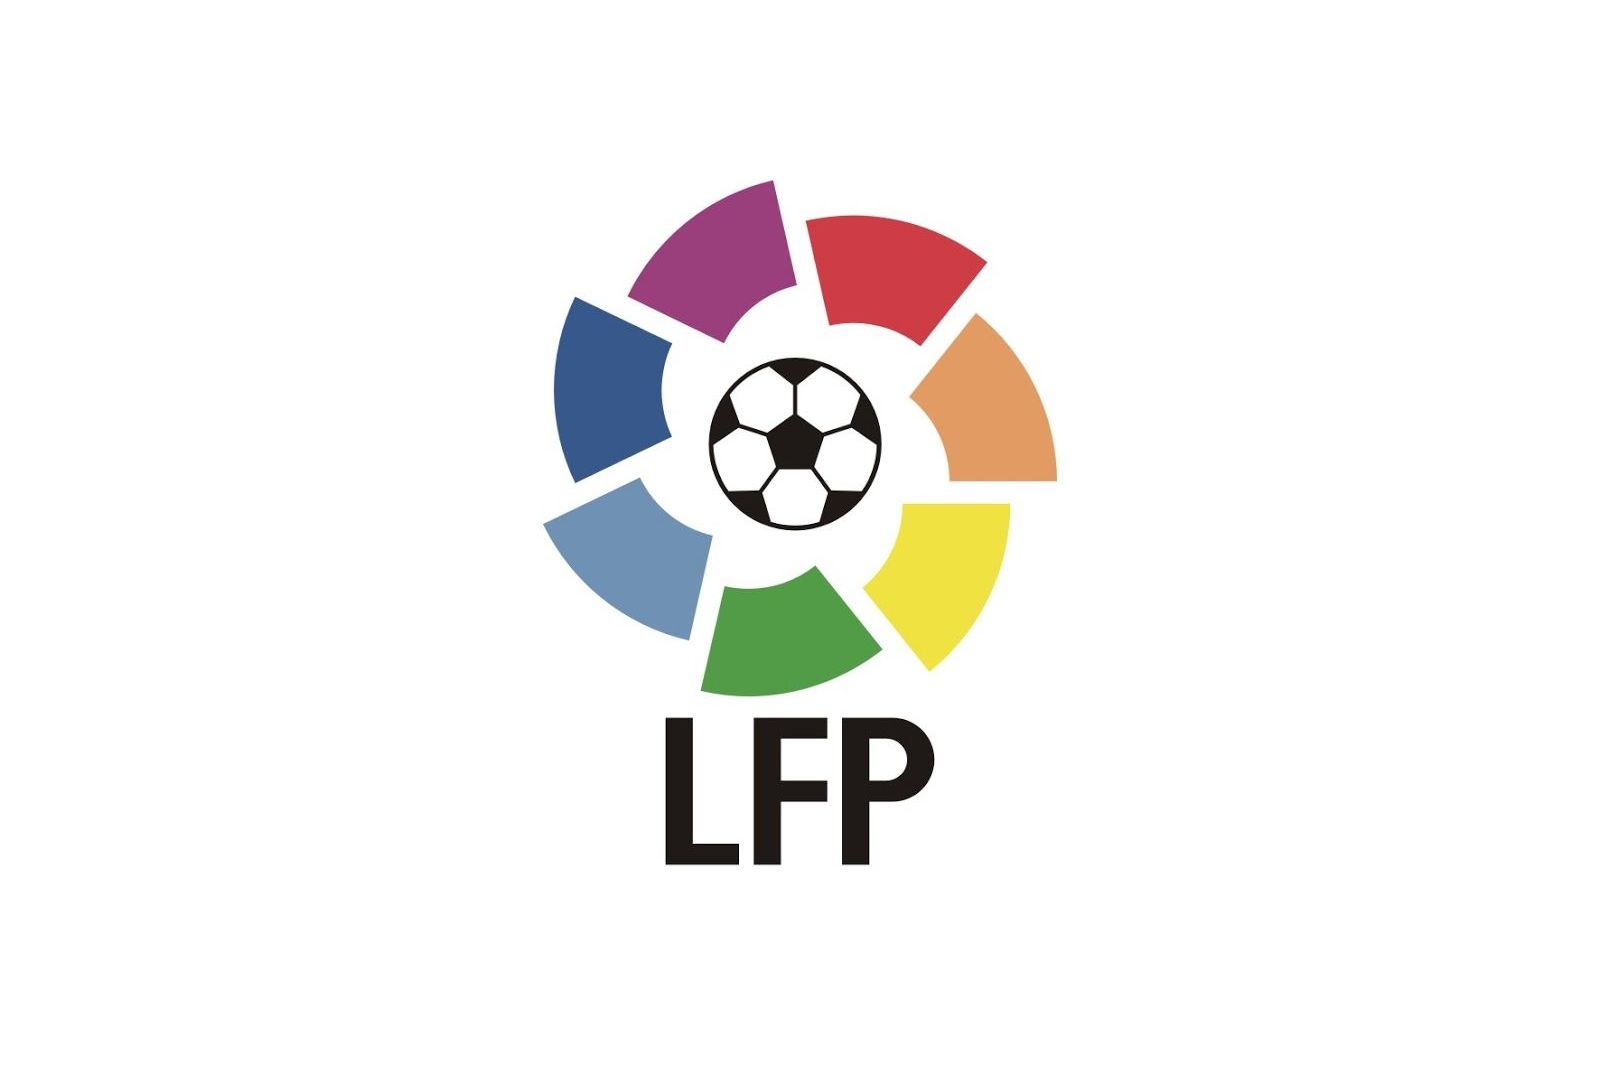 Чемпионат Испании по футболу логотип. Эмблема ла Лиги Испании. Испанская ла лига футбол лого. Логотип испанской премьер Лиги. Система футбольных лиг